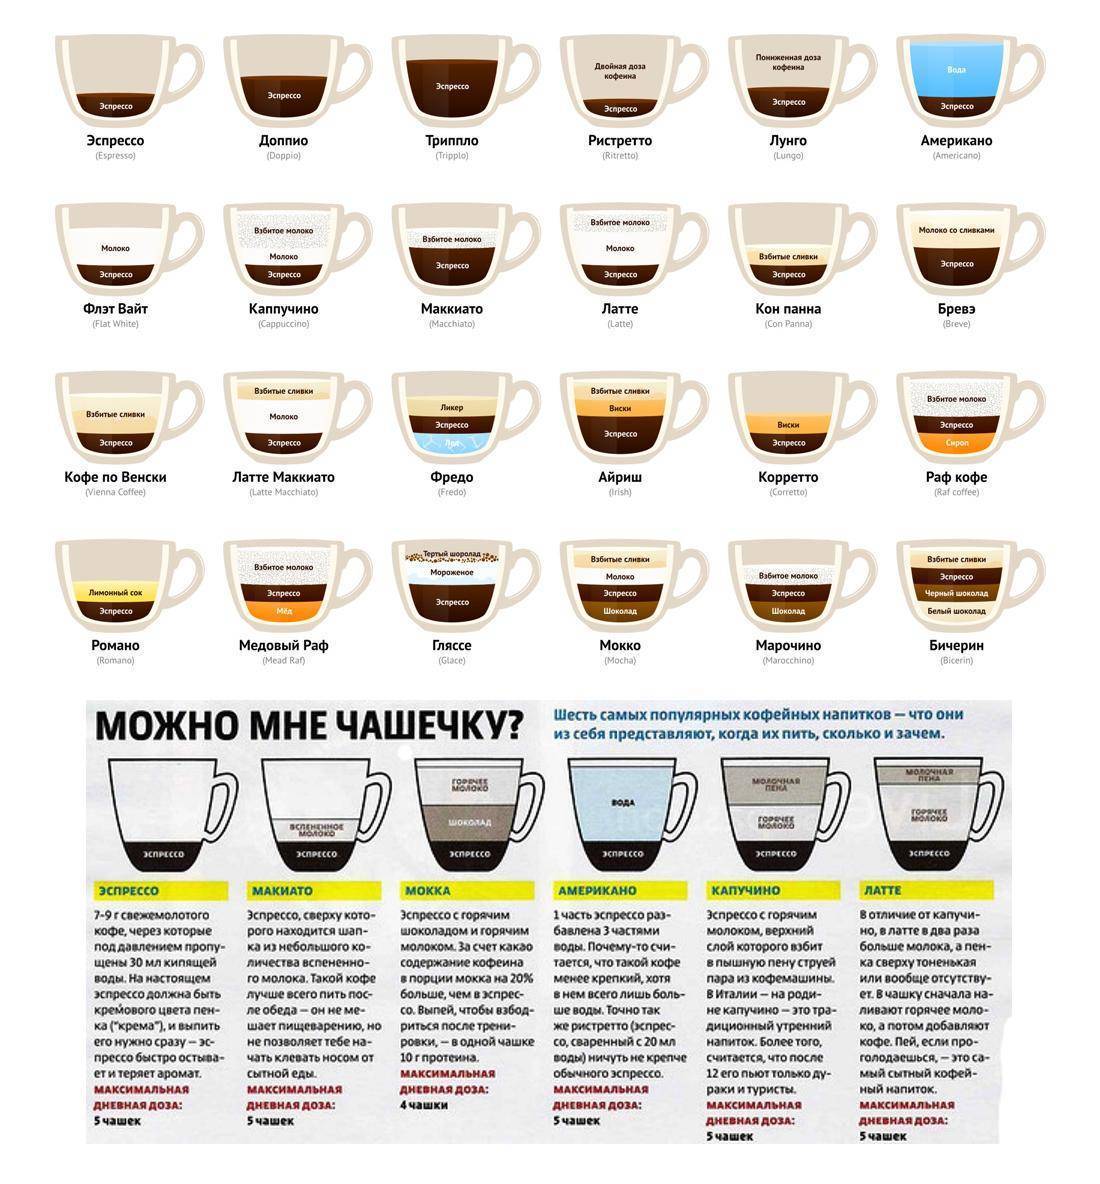 Все, что вы хотели знать о кофеине: вред, польза и многое другое.